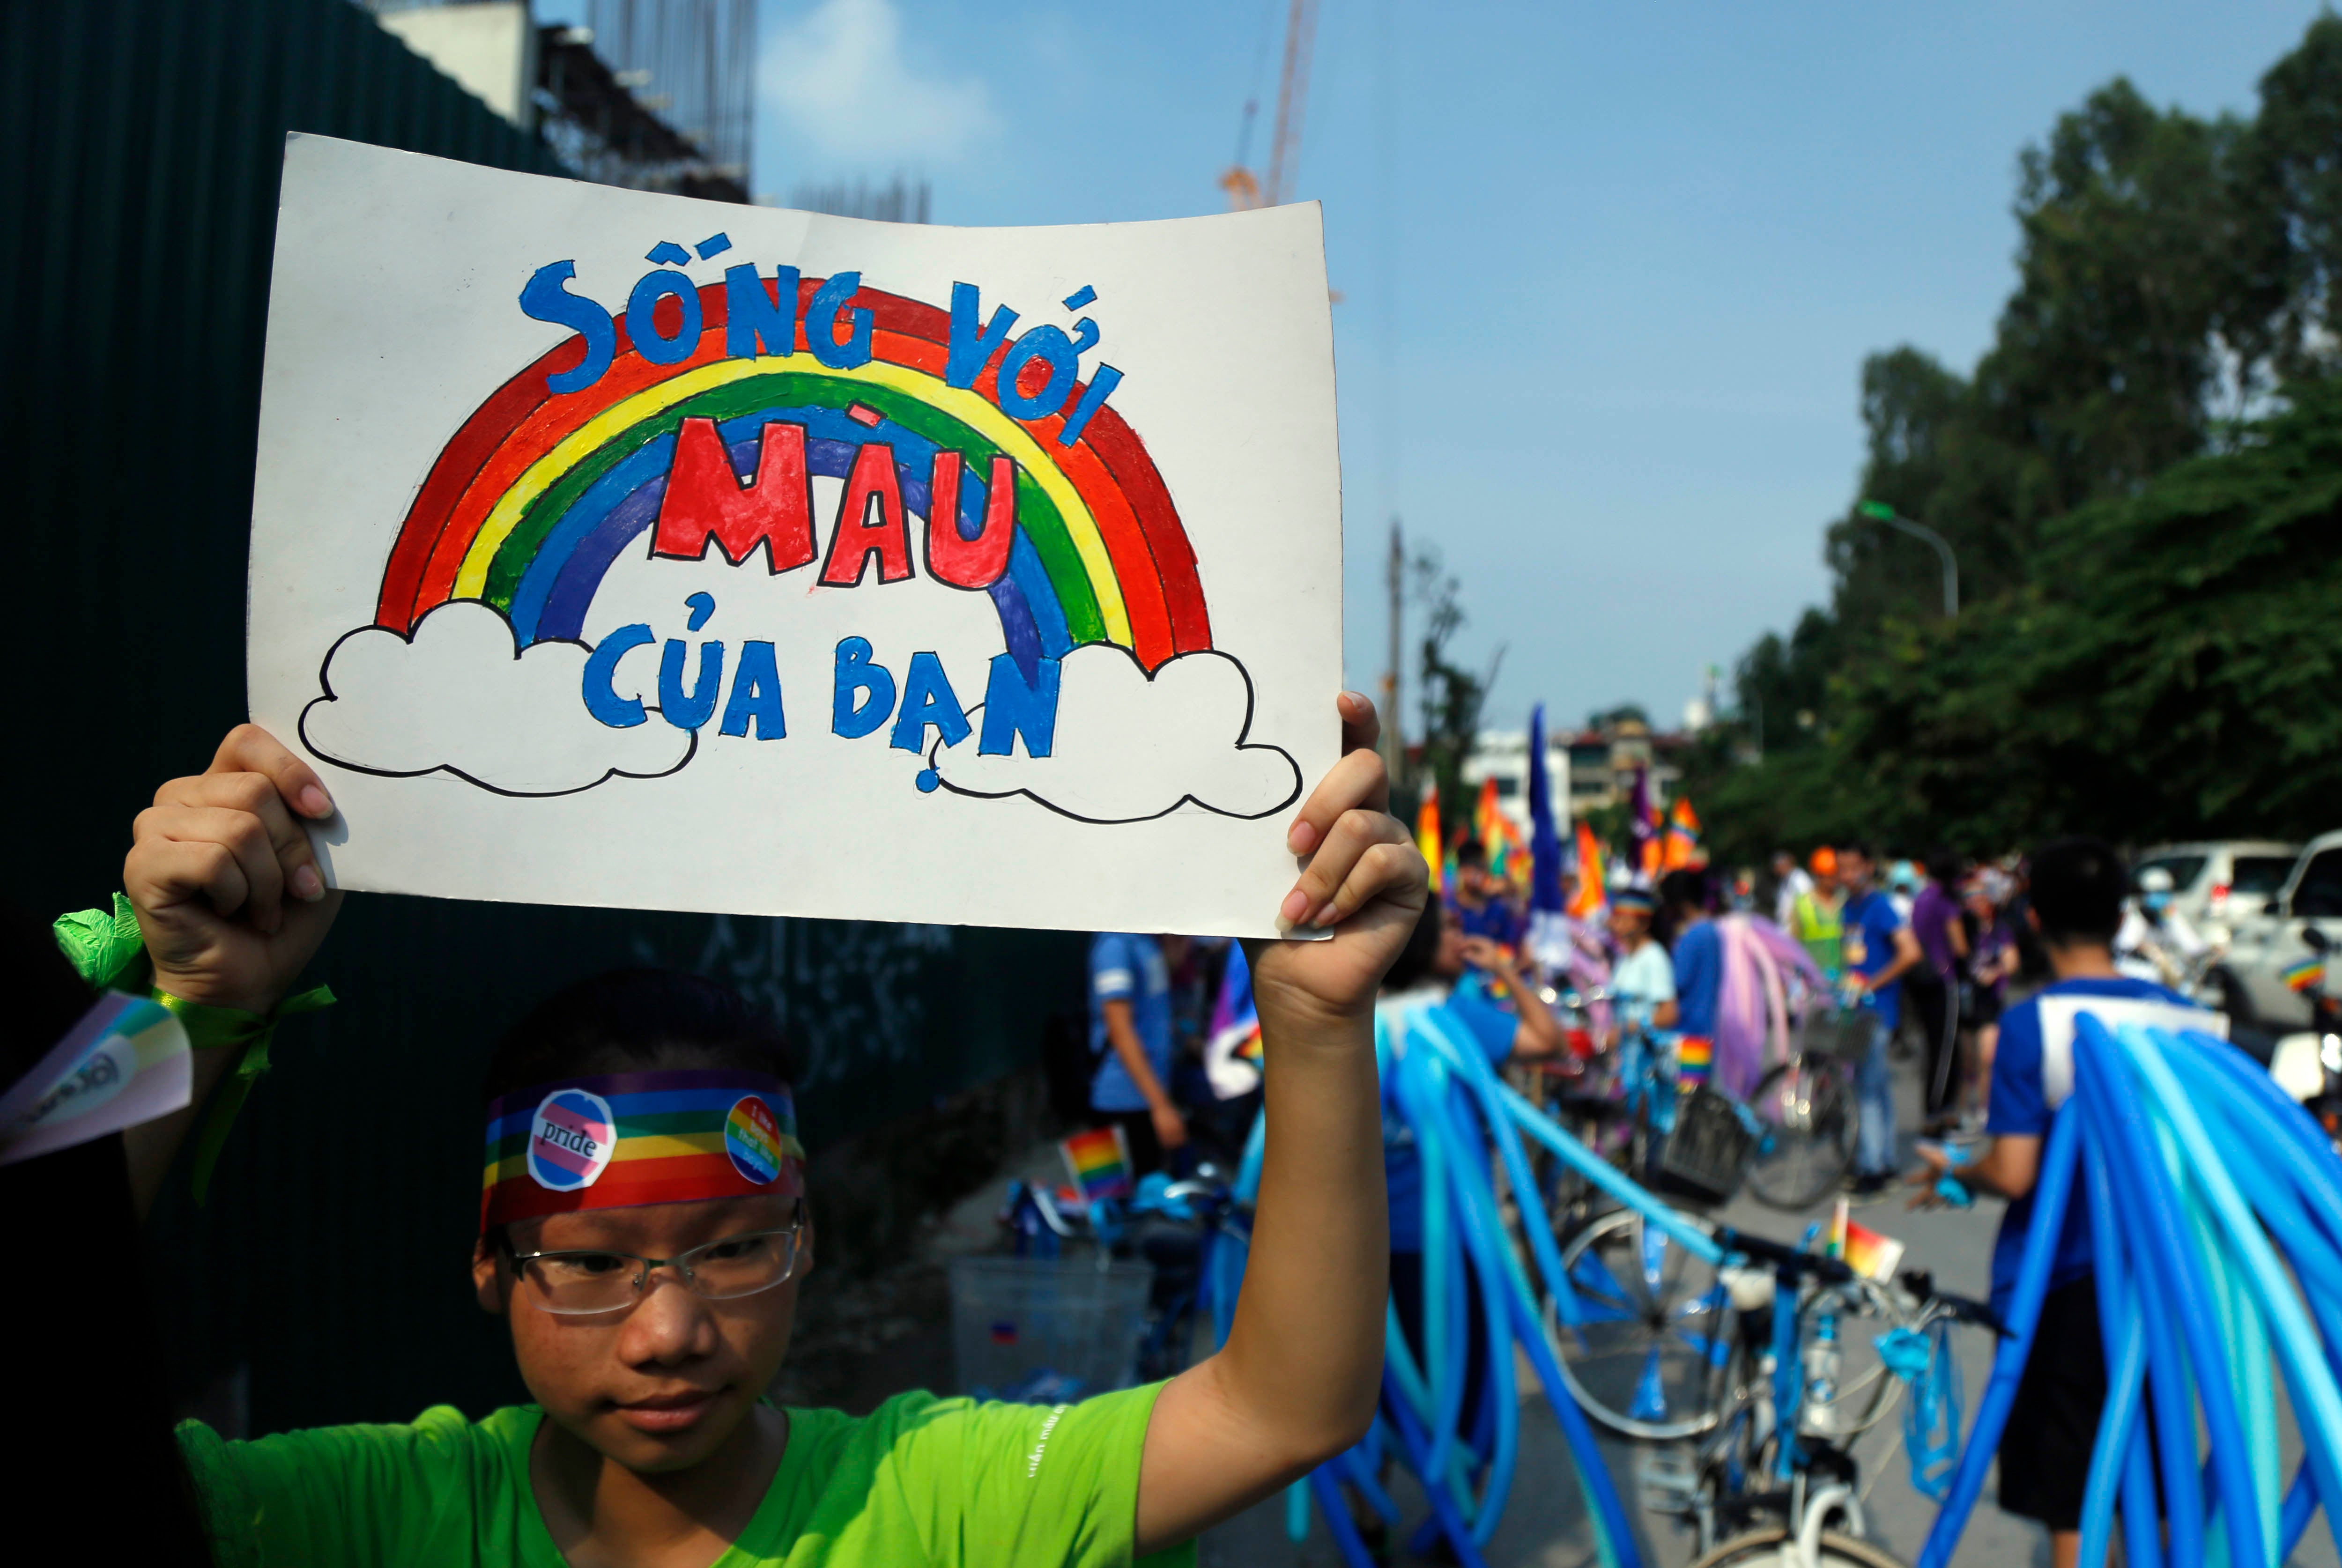  Seorang pesepeda membentangkan poster berbahasa Vietnam, "Pancarkan warna sejatimu," menjelang sebuah ajang balap sepeda di Hanoi, Vietnam, 24 September 2017. © 2017 AP Photo/Hau Dinh